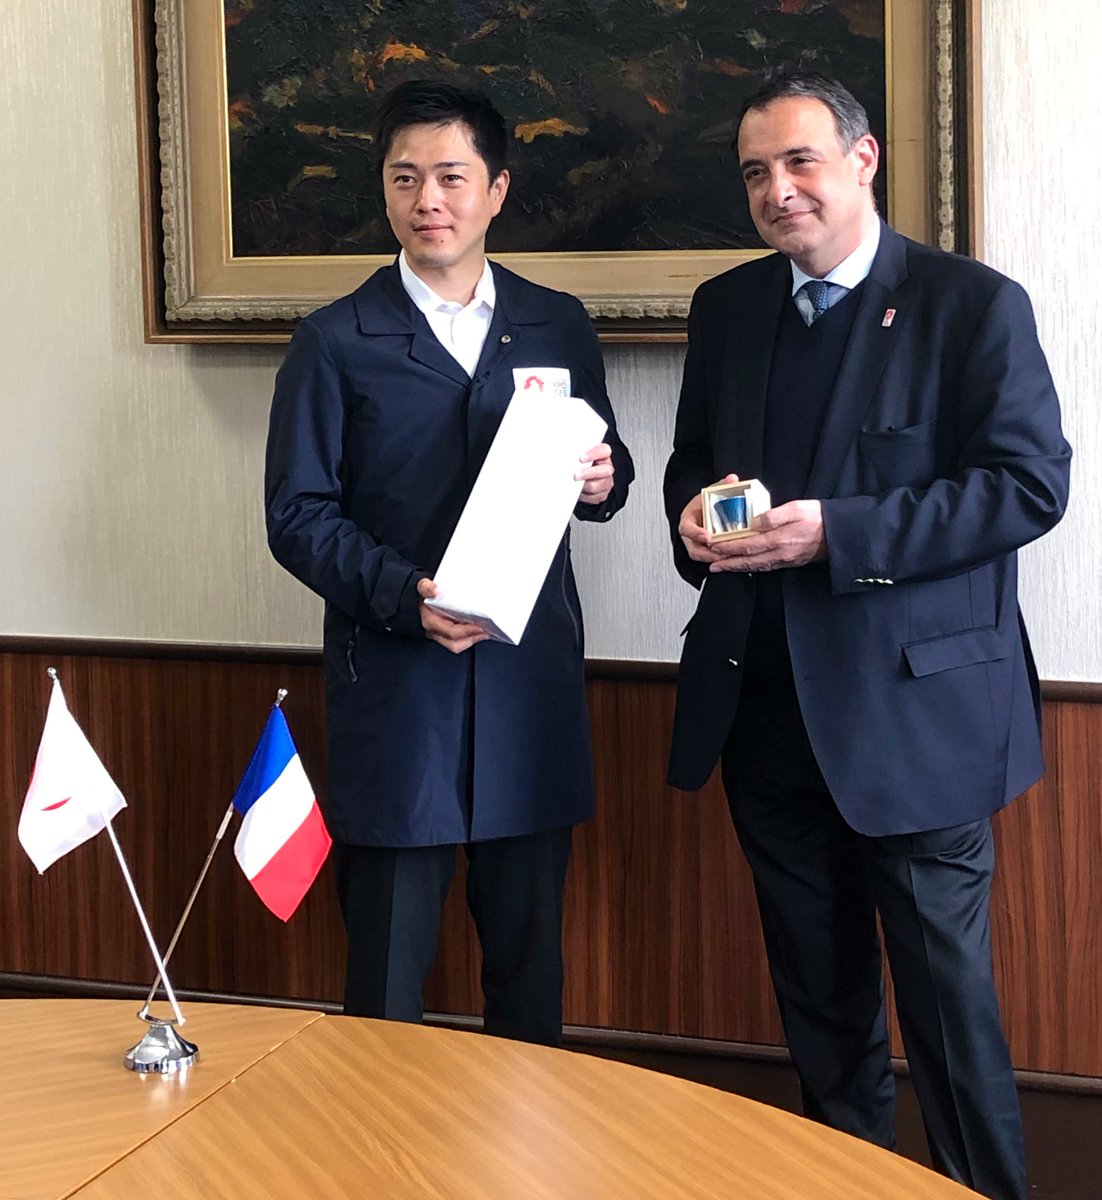 セトン大使は、吉村洋文大阪府知事 @hiroyoshimura と面会しました。2025年に開催される #大阪・関西万博  @expo2025_japan や、1987年に大阪府とヴァルドワーズ県@valdoise
の間で結ばれた友好交流提携などに象徴される、大阪とフランスの歴史的な繋がりなどが想起されました🇫🇷🤝🇯🇵 